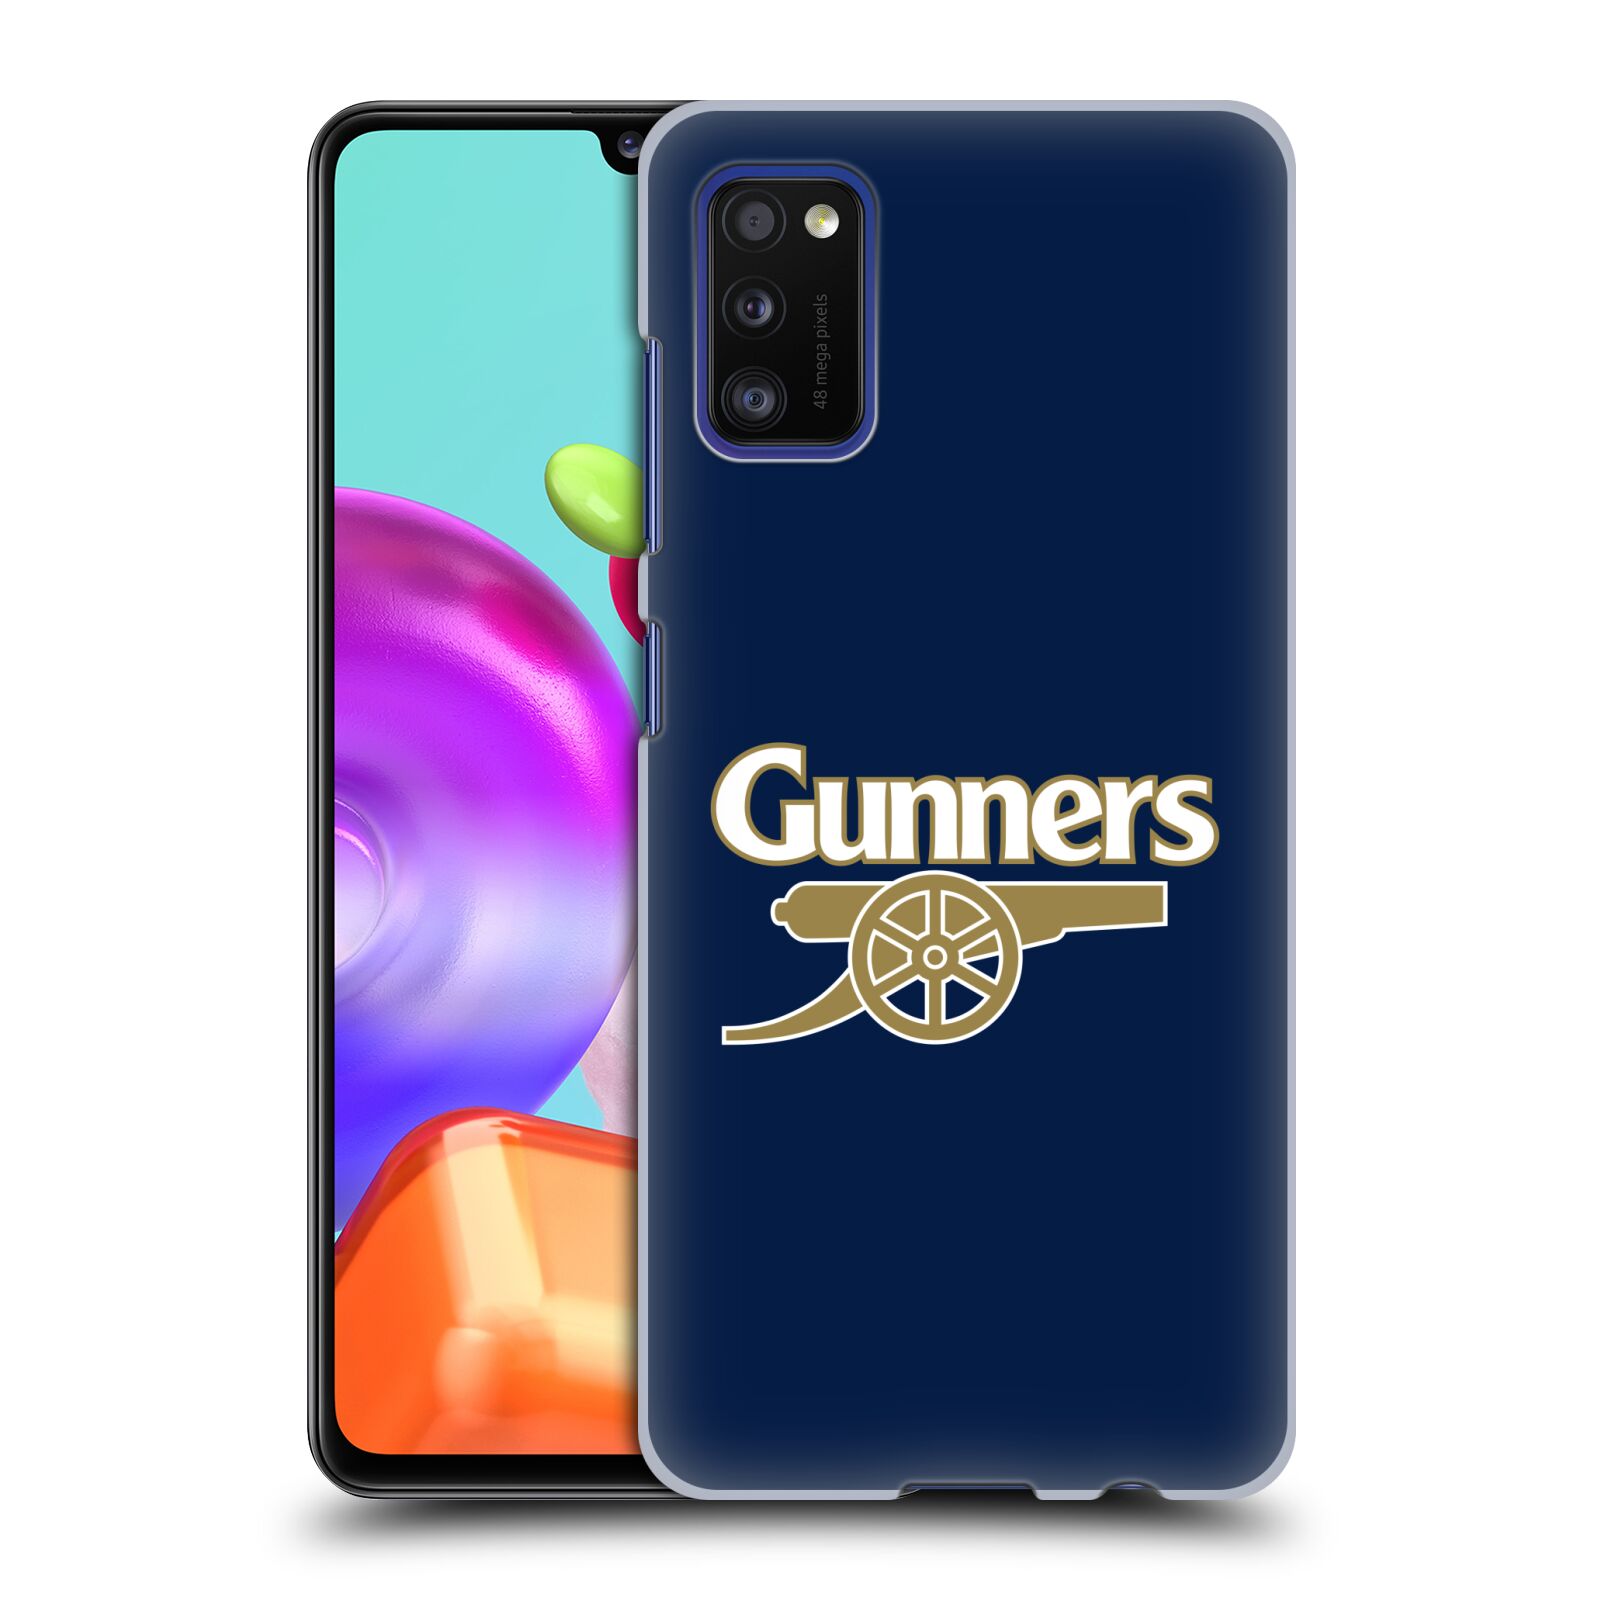 Plastové pouzdro na mobil Samsung Galaxy A41 - Head Case - Arsenal FC - Gunners (Plastový kryt, pouzdro, obal na mobilní telefon s motivem klubu Arsenal FC - Gunners pro Samsung Galaxy A41 A415F Dual SIM)